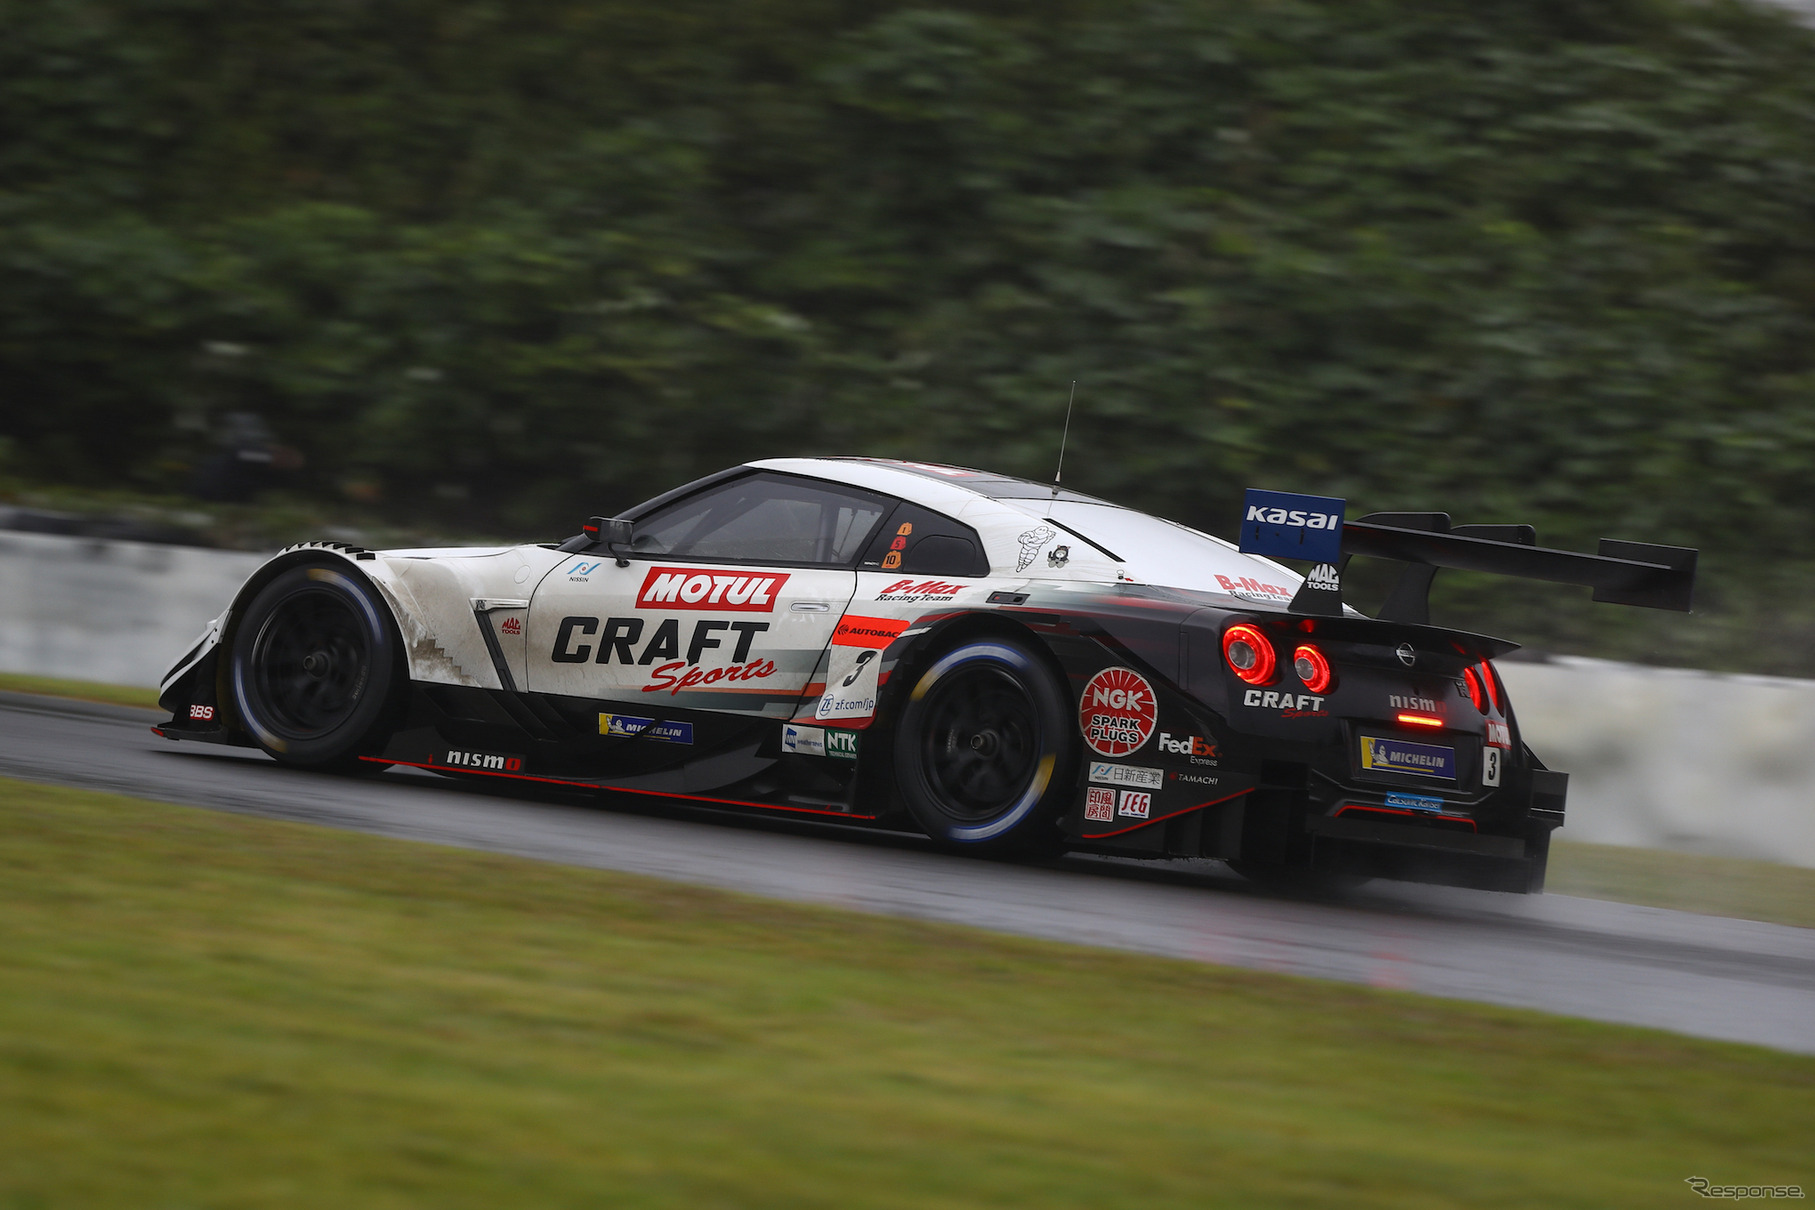 GT-Rの今季GT500クラス初優勝となったSUGO戦を終え、シリーズは最終戦へ。